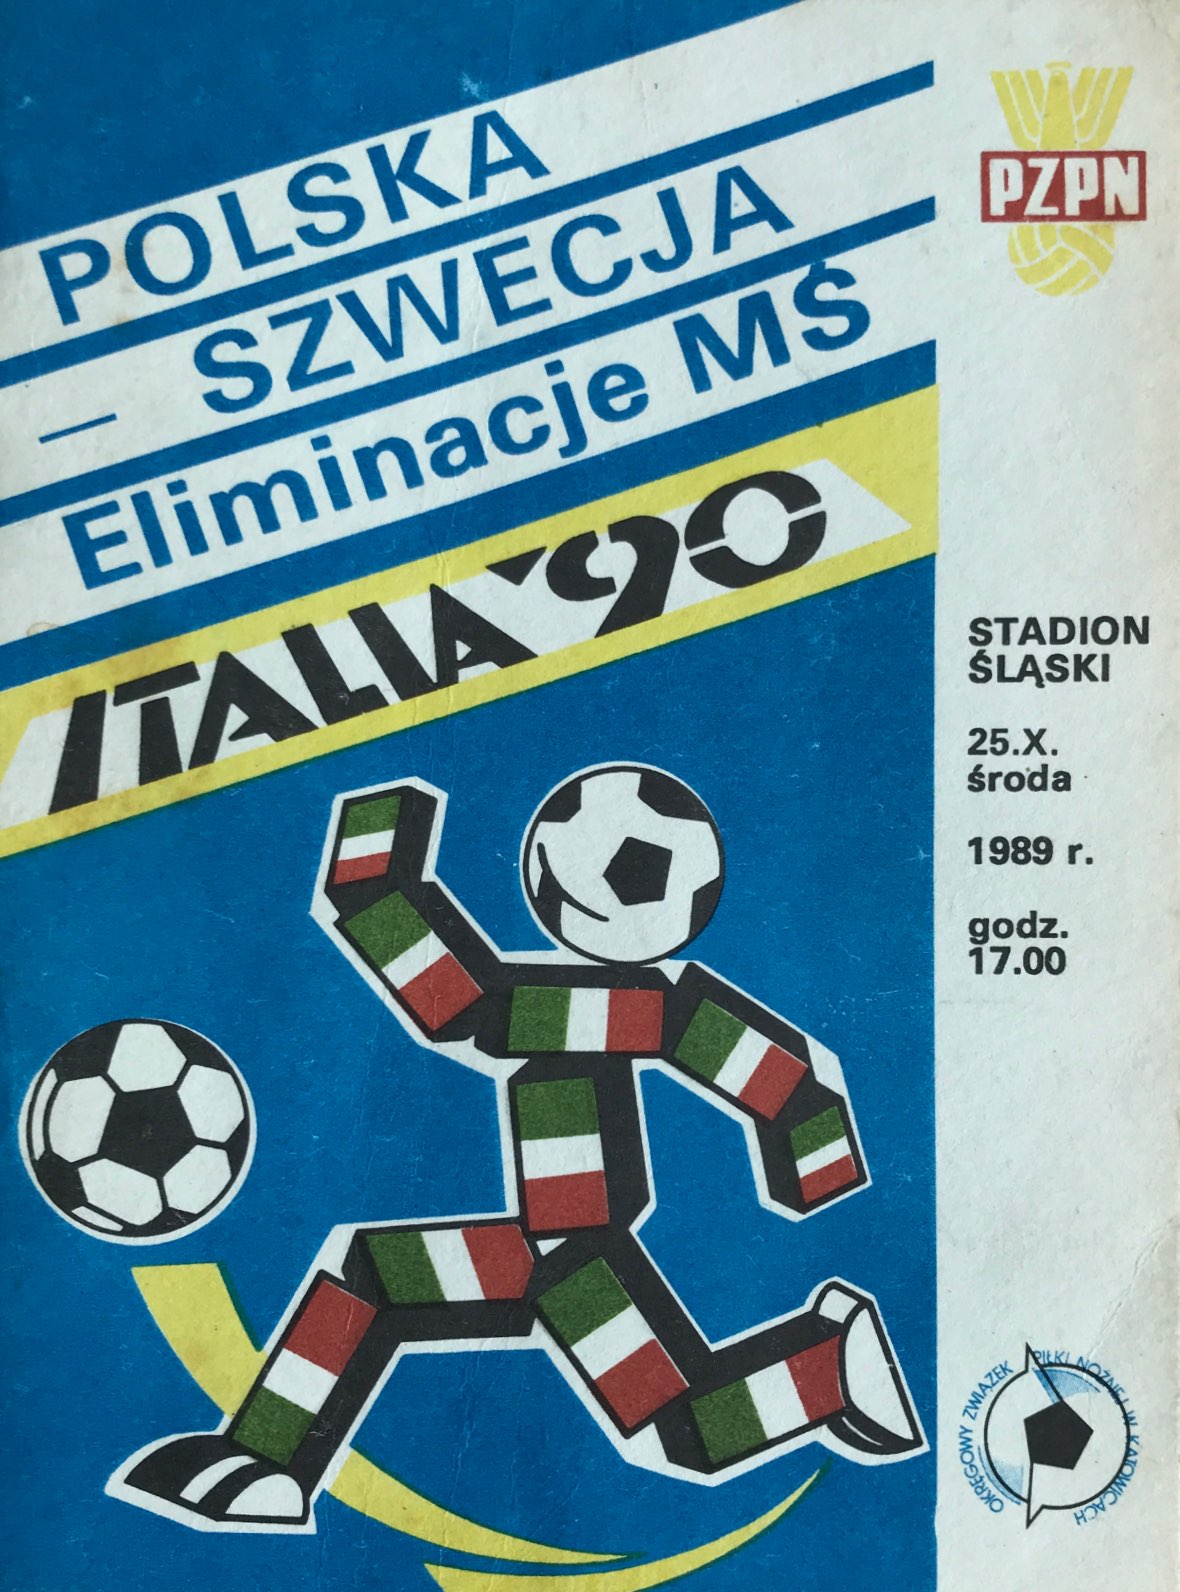 Program meczowy Polska - Szwecja 0:2 (25.10.1989)